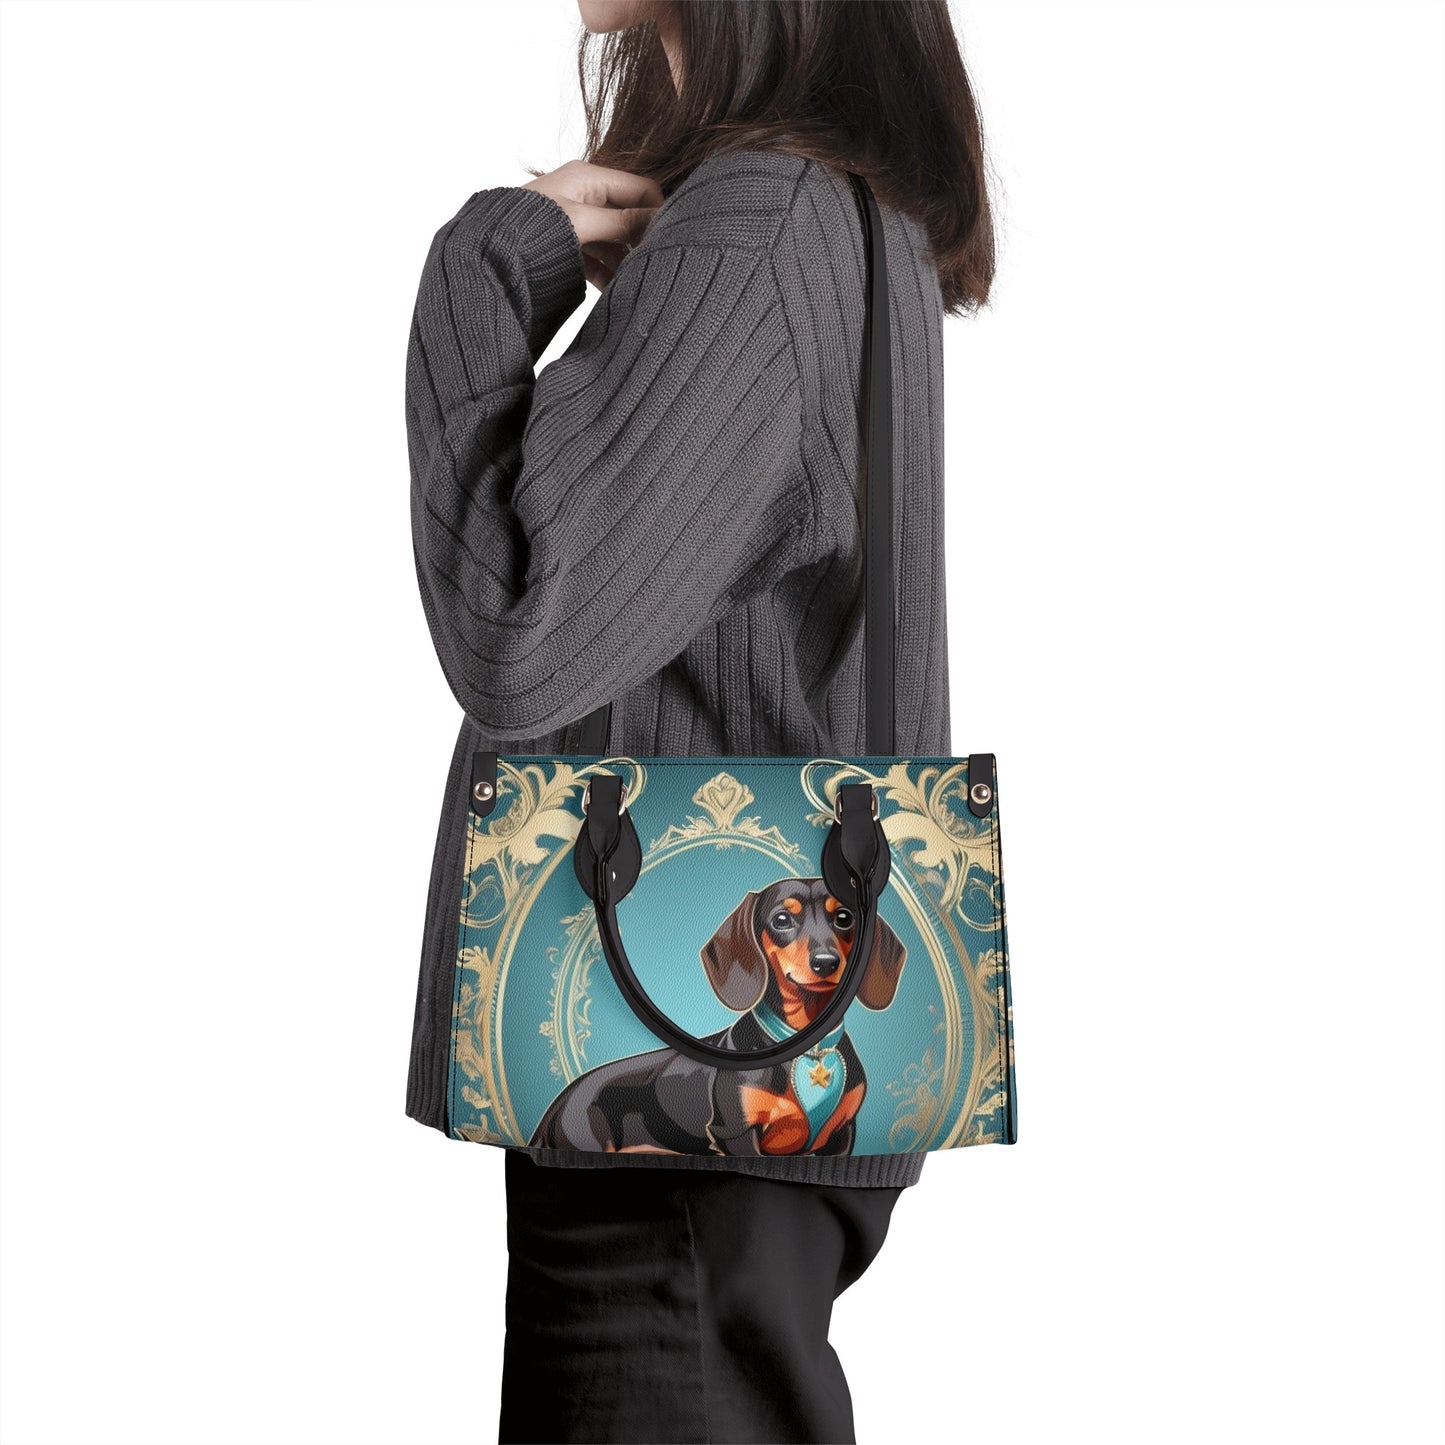 Jane - Luxury Women Handbag